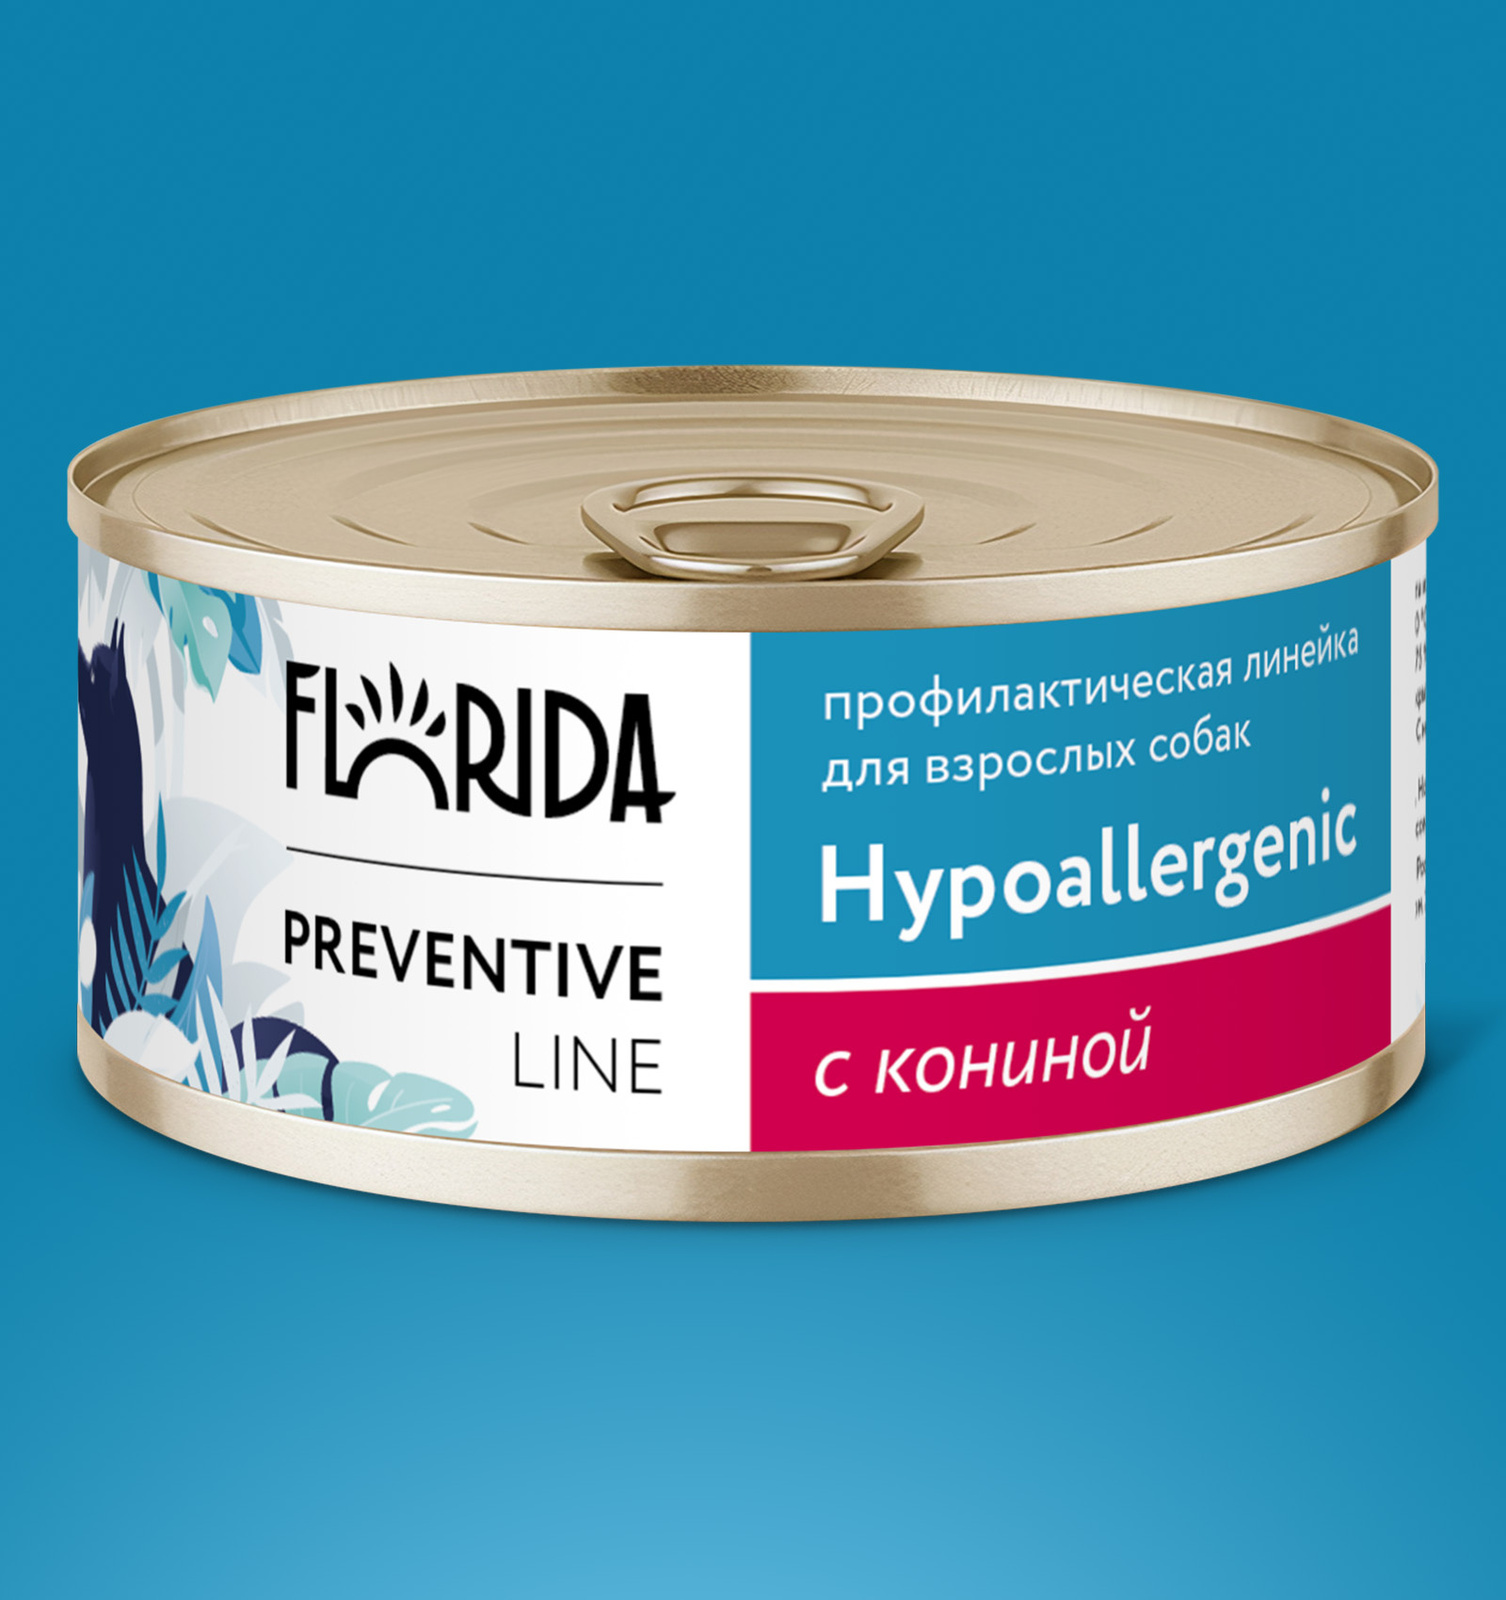 Florida Preventive Line консервы Florida Preventive Line консервы hypoallergenic для собак Гипоаллергенные с кониной (100 г)